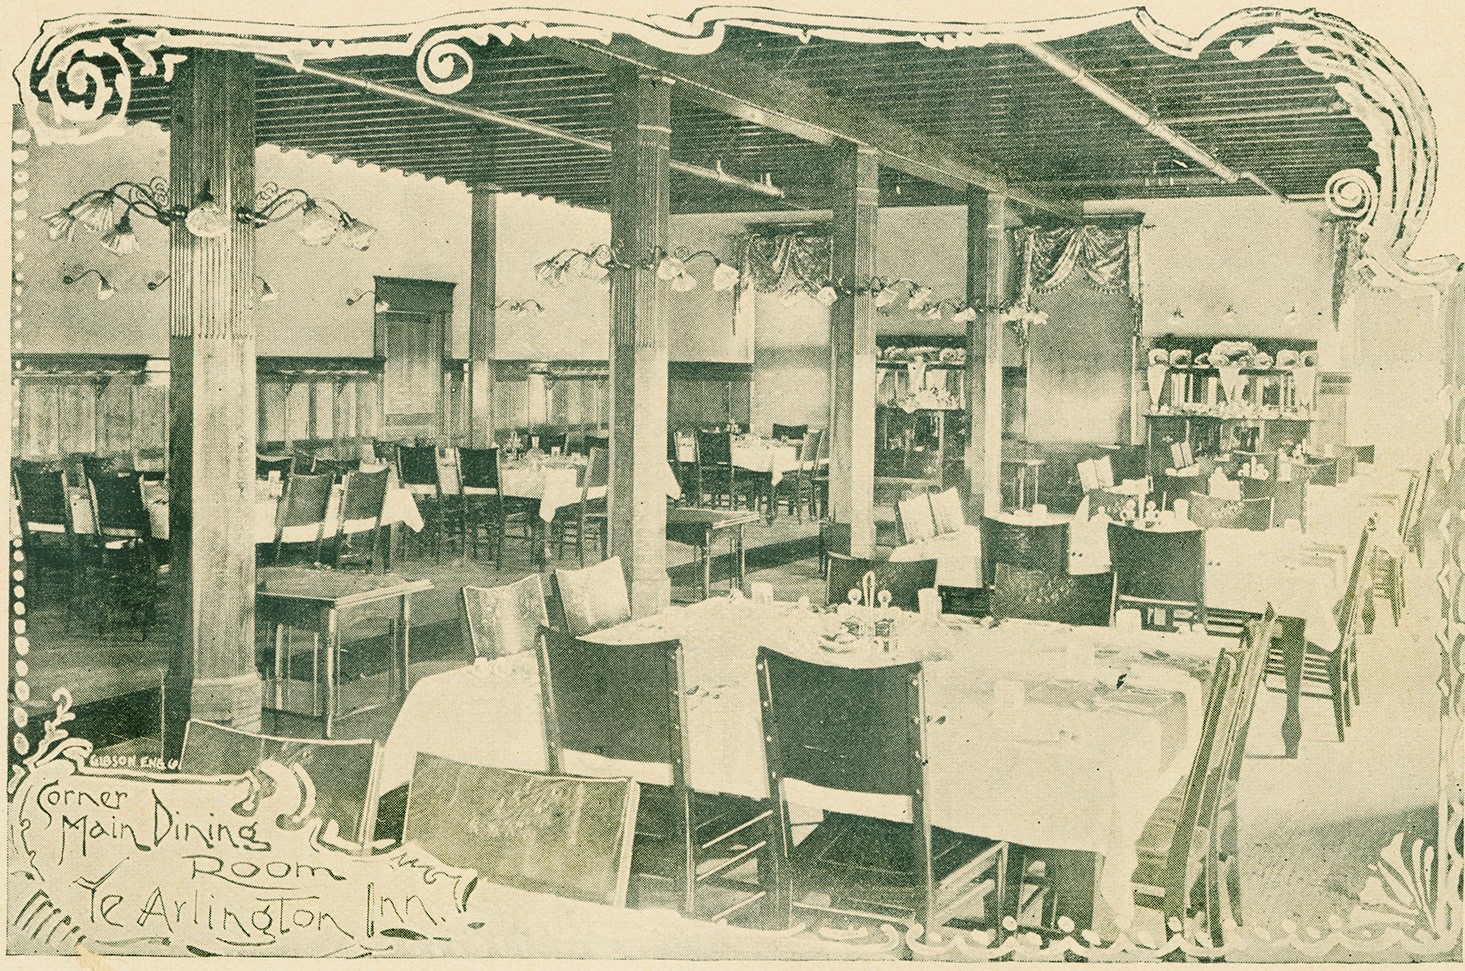 Main dining room at Ye Arlington Inn